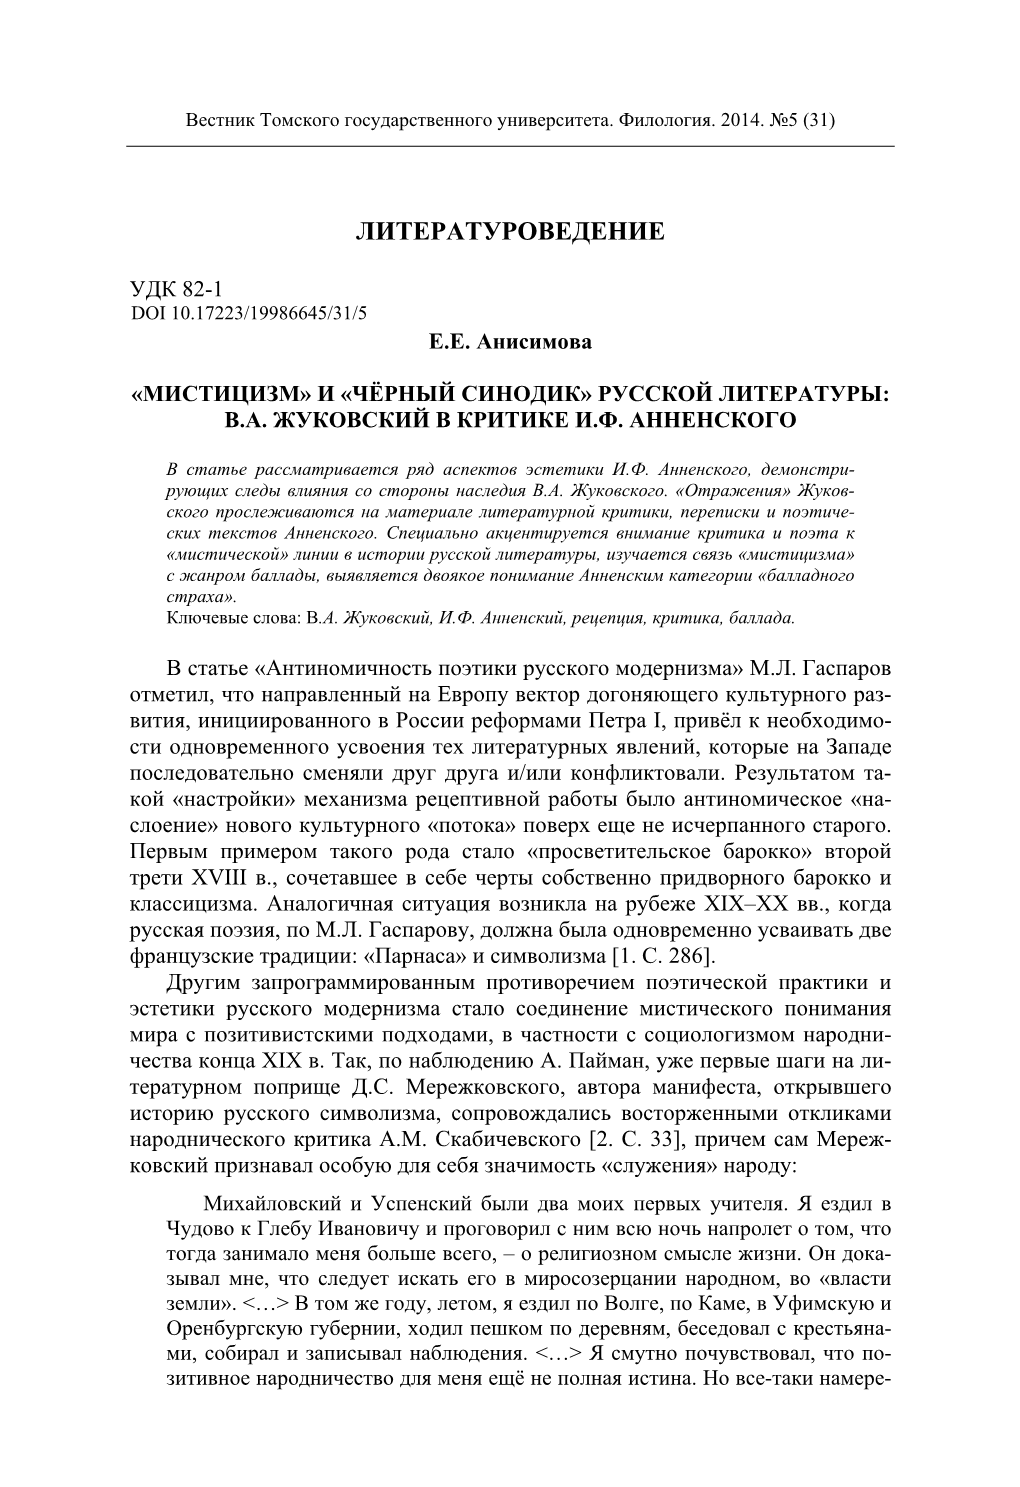 Black Death Bill" of the Russian Literature: V.A. Zhukovsky in I.F. Annensky's Critical Essays